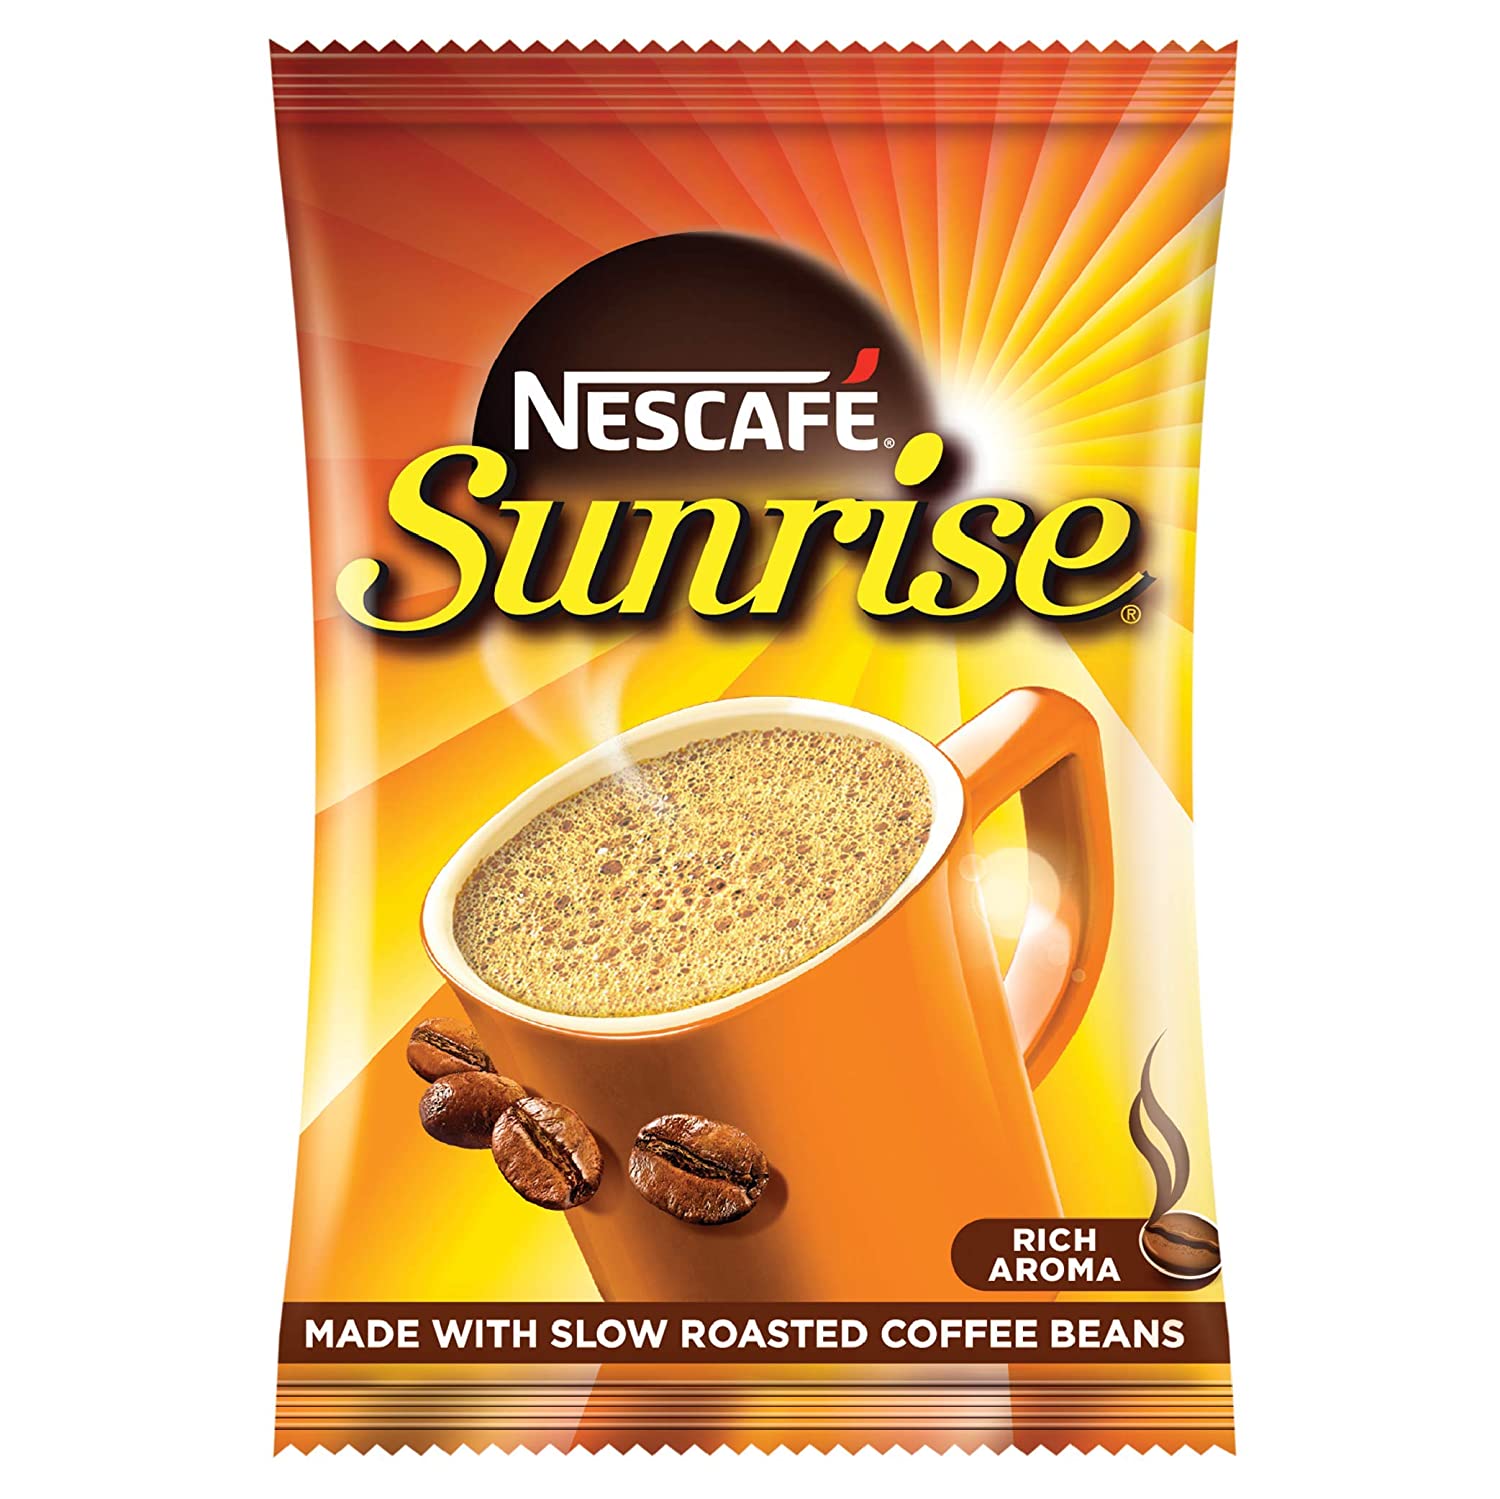 Nescafe Sunrise Sachet Image